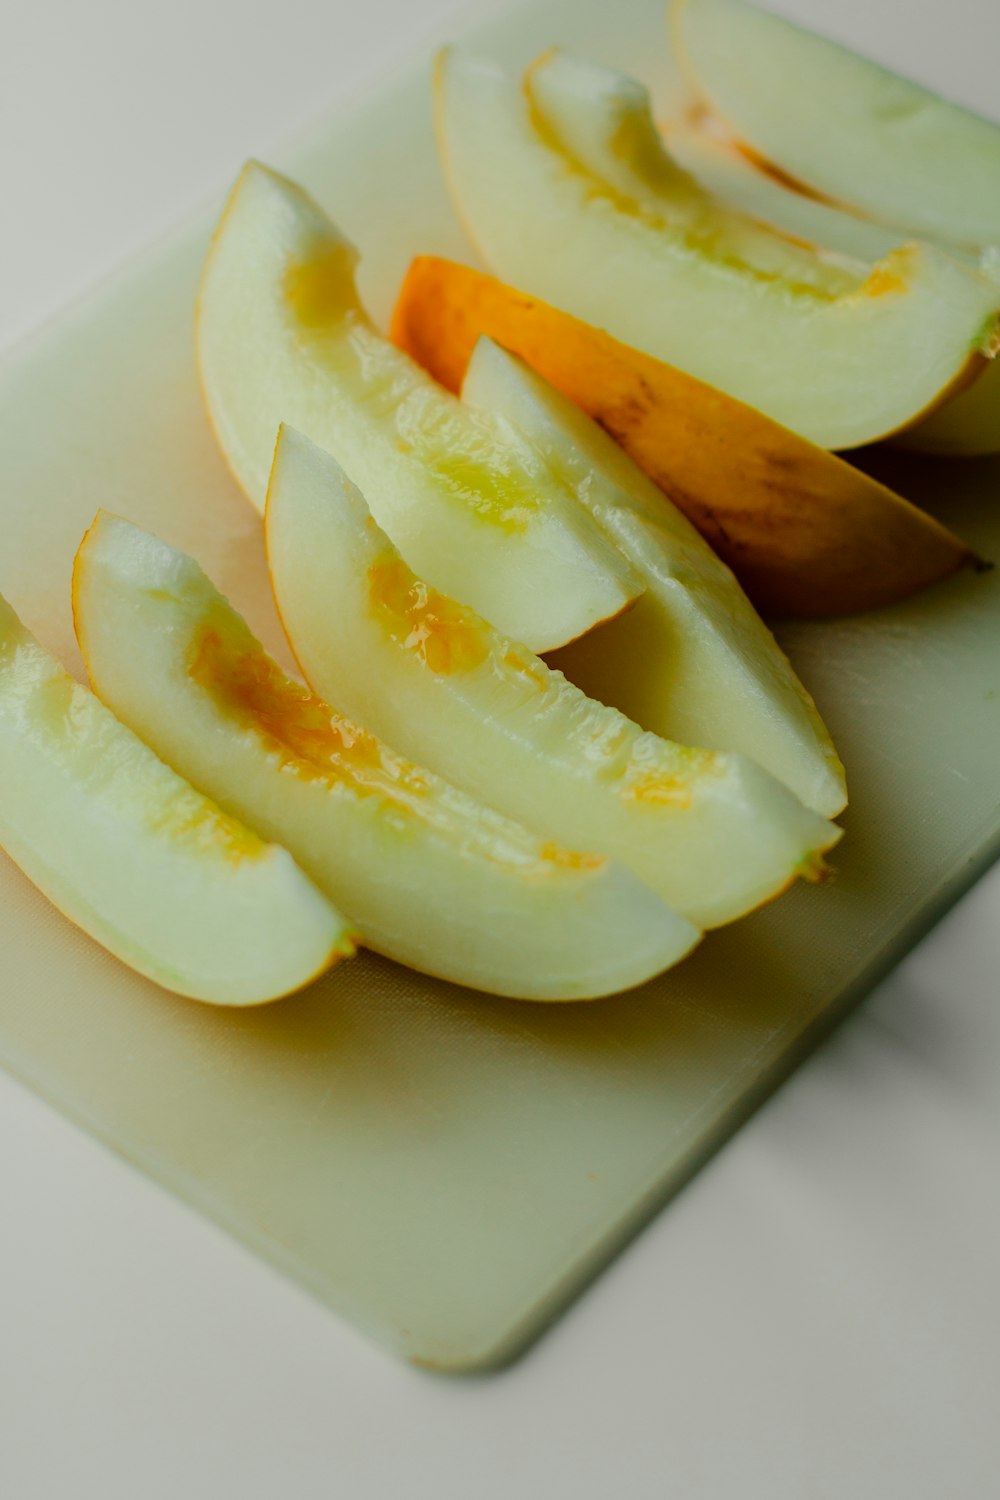 sliced apple on white ceramic plate